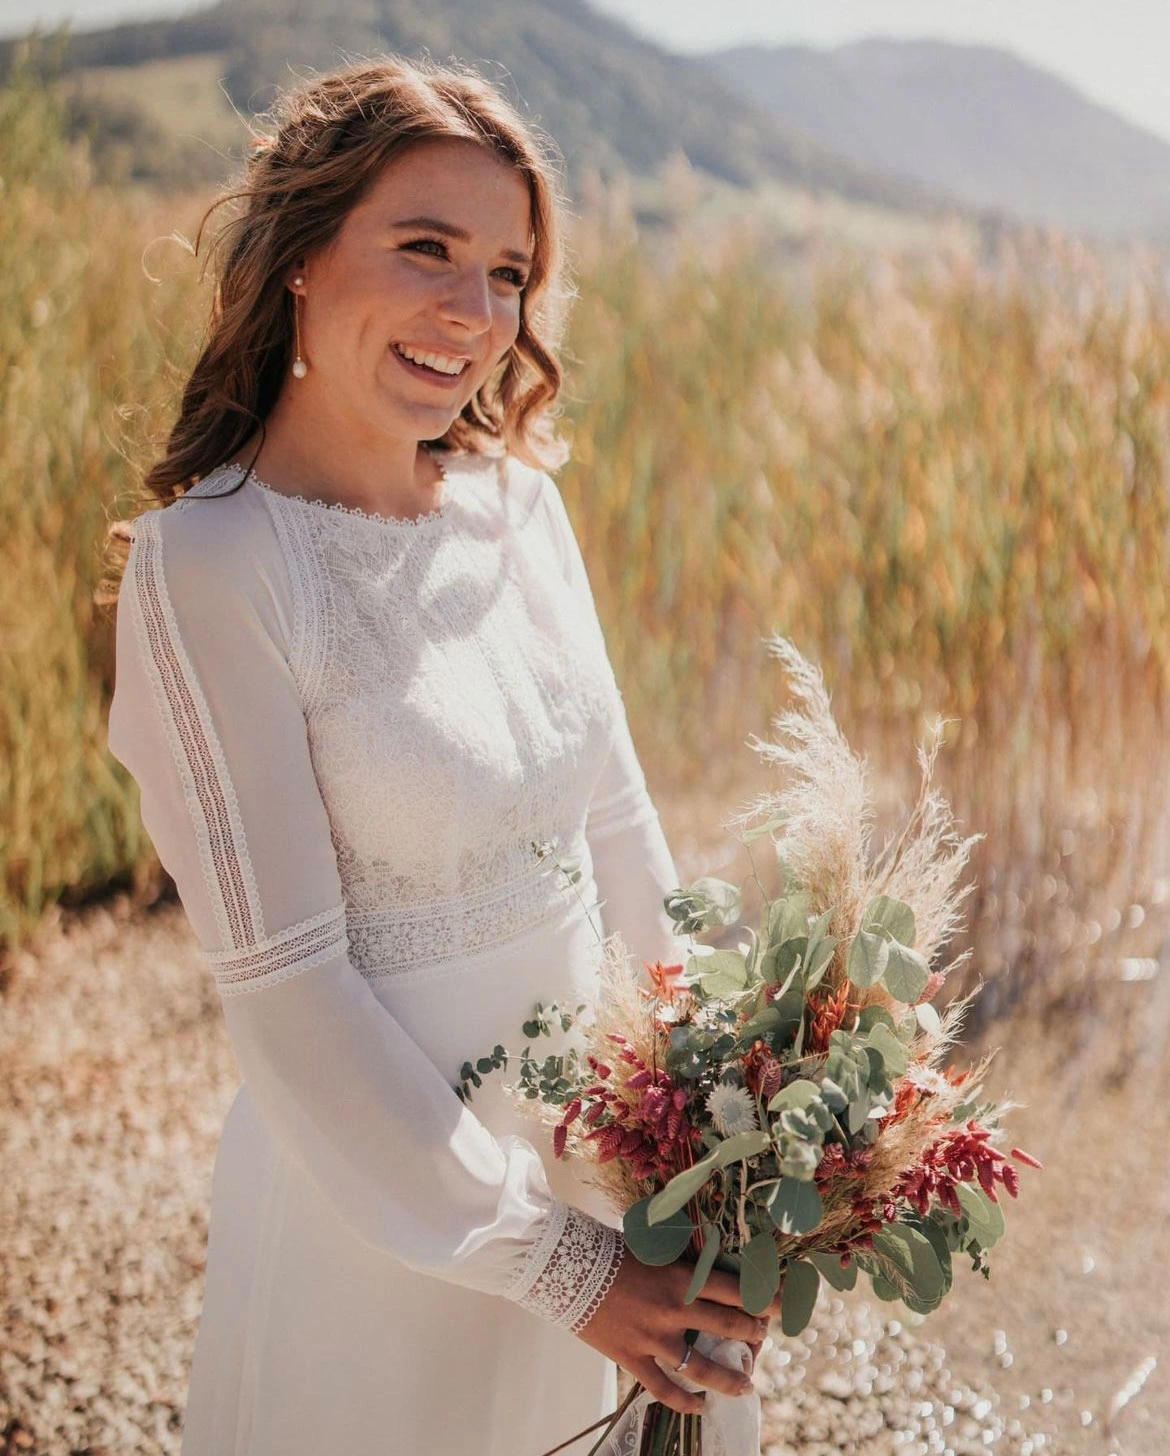 Braut mit weißem Hochzeitskleid und Blumenstrauß steht in einem Feld. Make-up von Denise Drahtmueller